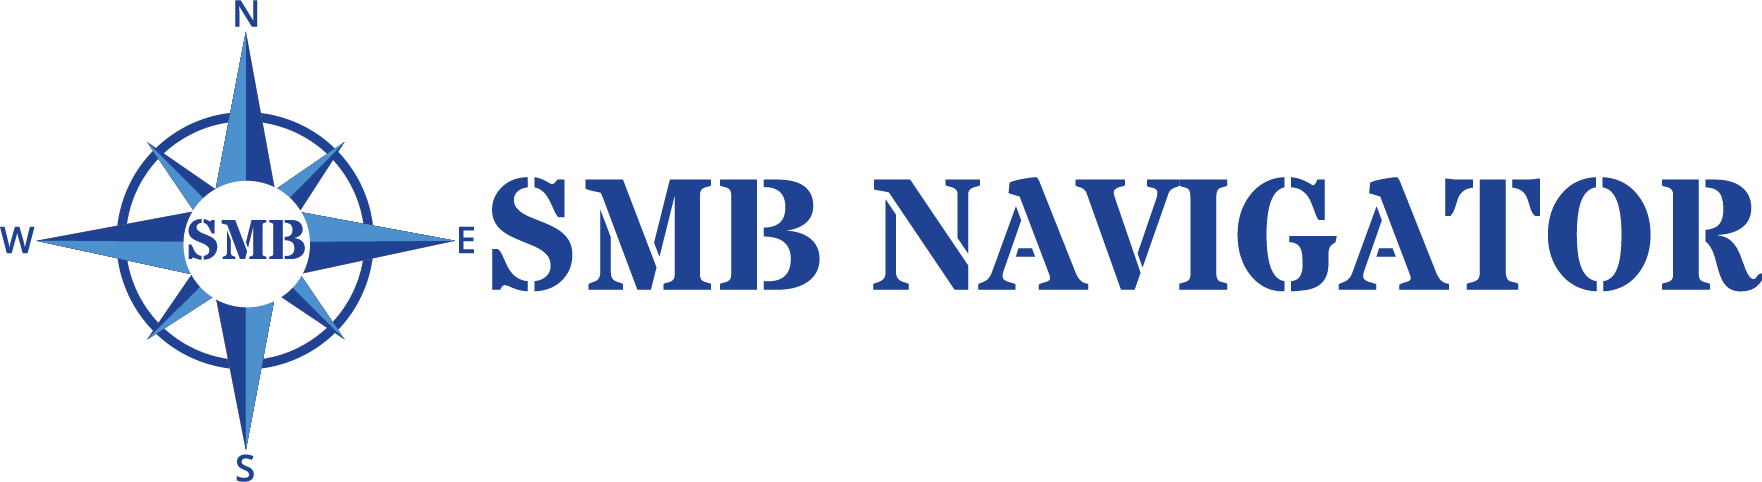 SMB-Navigator_WOTL_Final_PNG